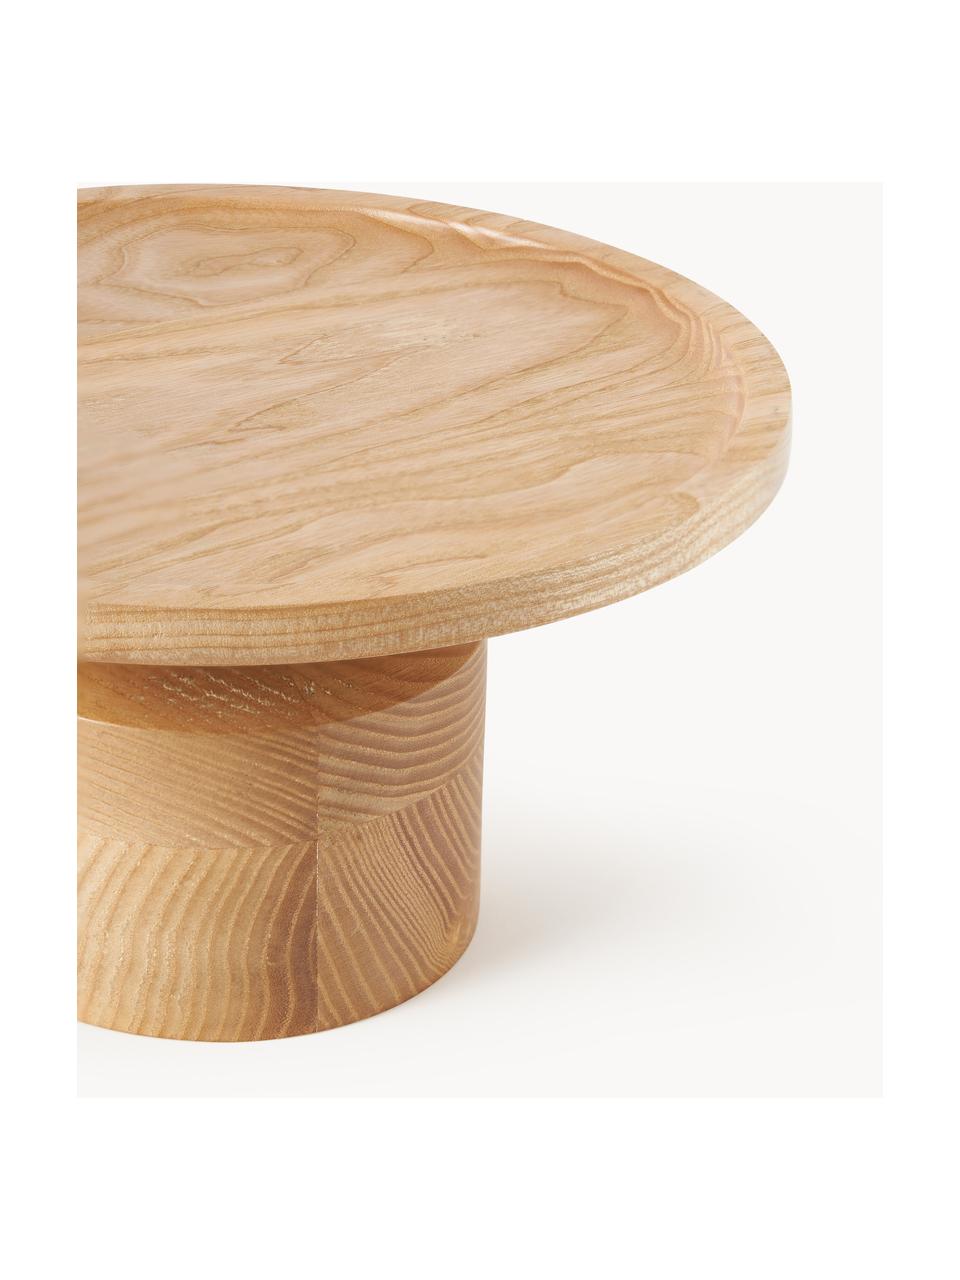 Dekoračný podnos z jaseňového dreva Keoni, Jaseňové drevo, lakované
Tento produkt je vyrobený z trvalo udržateľného dreva s certifikátom FSC®., Jaseňové drevo, Ø 22 cm